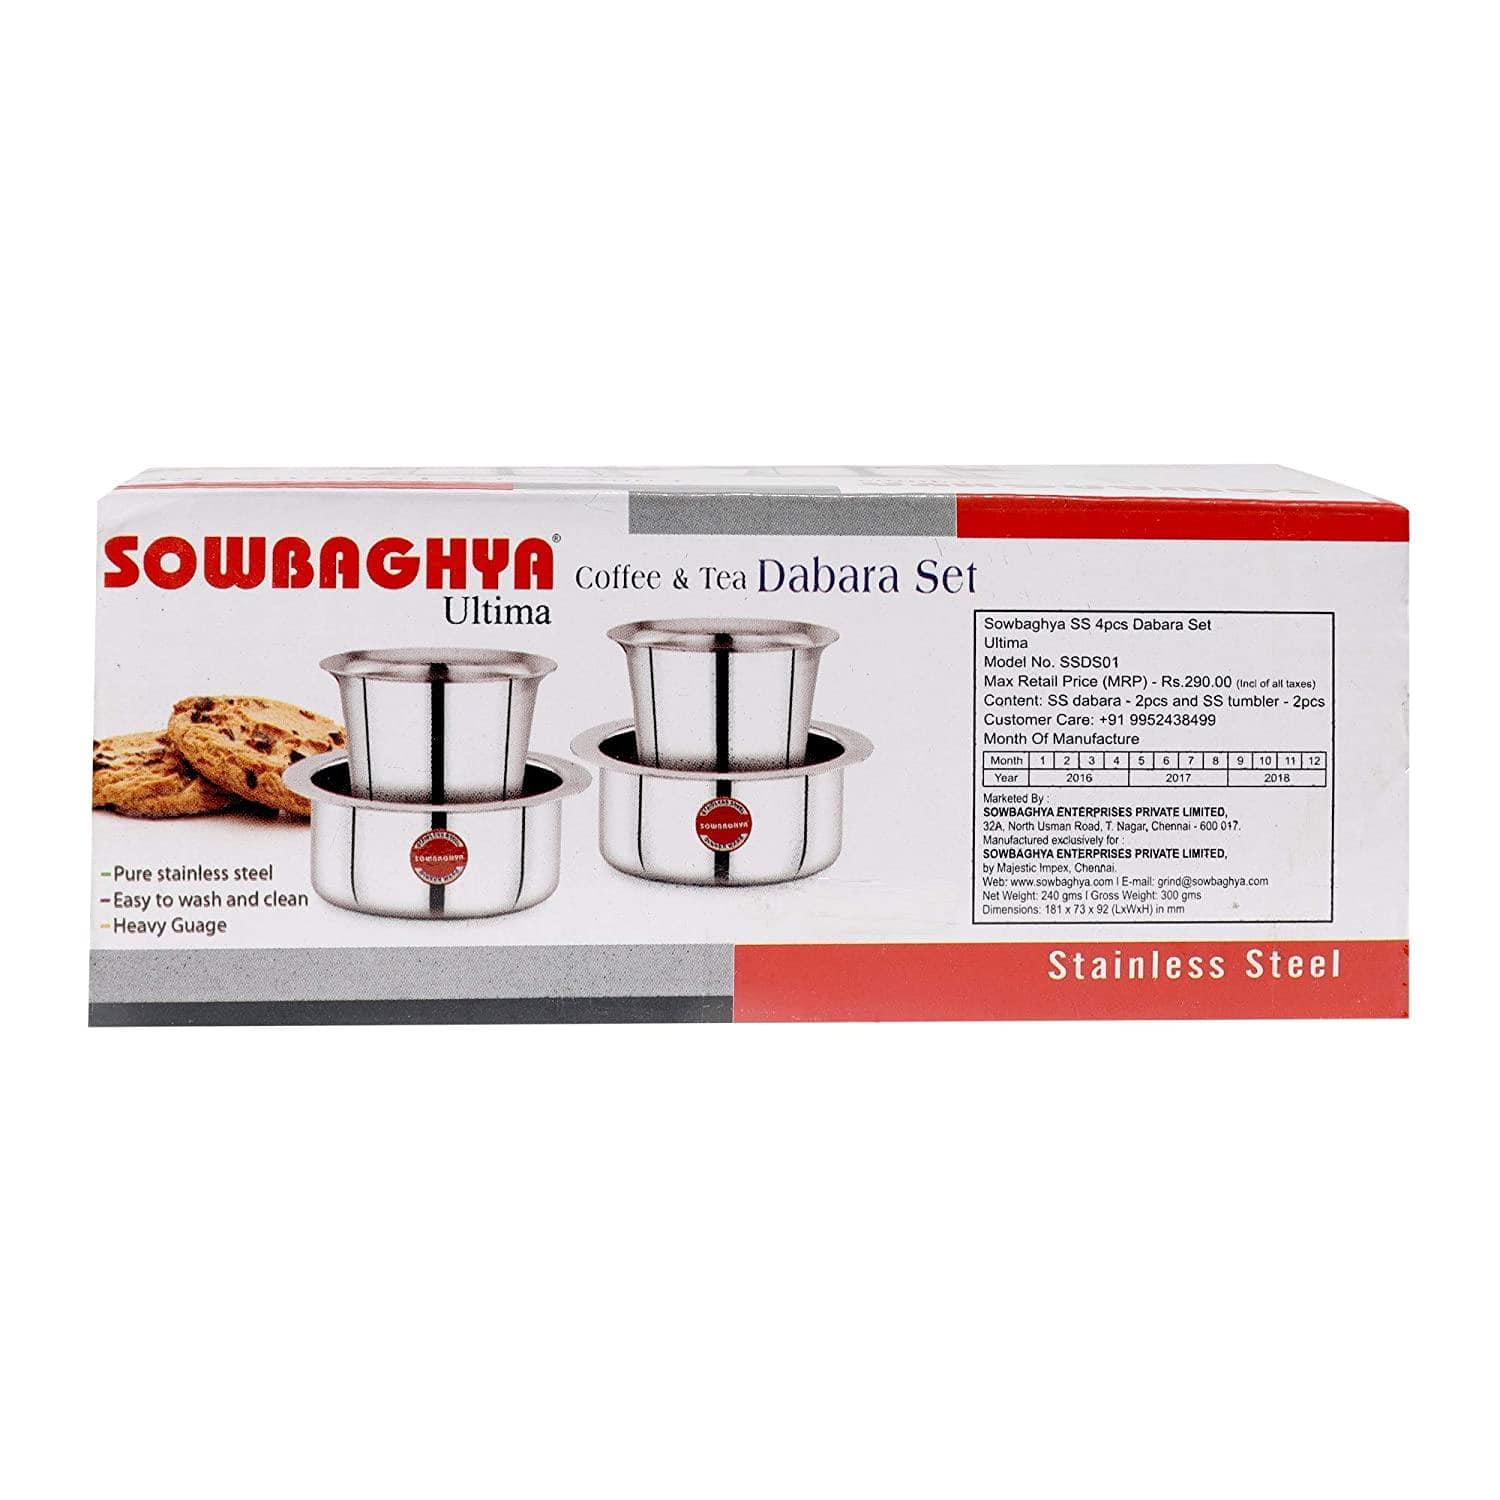 Sowbaghya Ultima SS 4Pcs Dabara Set-Home & Kitchen Appliances-dealsplant